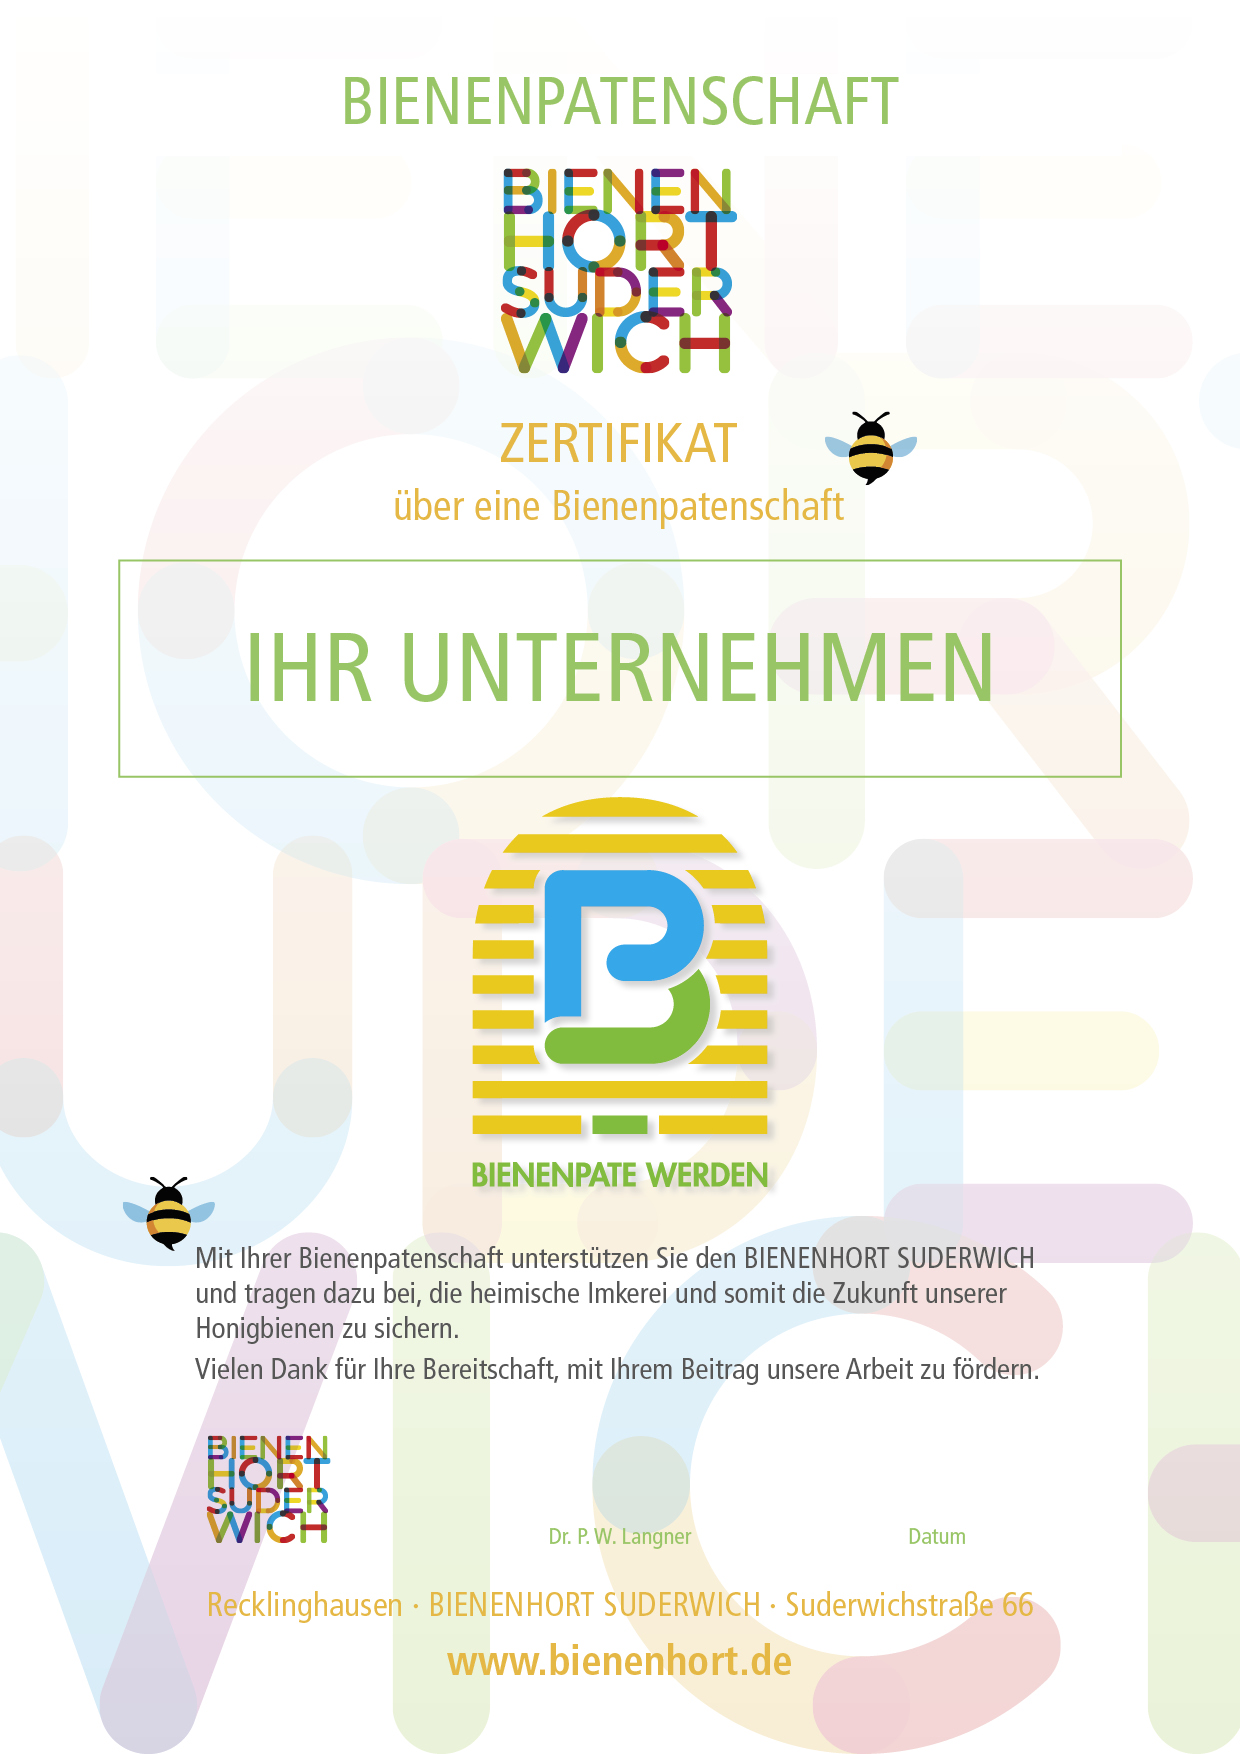 Urkunde Bienenpatenschaft BIENENHORT SUDERWICH Recklinghausen für Unternehmen